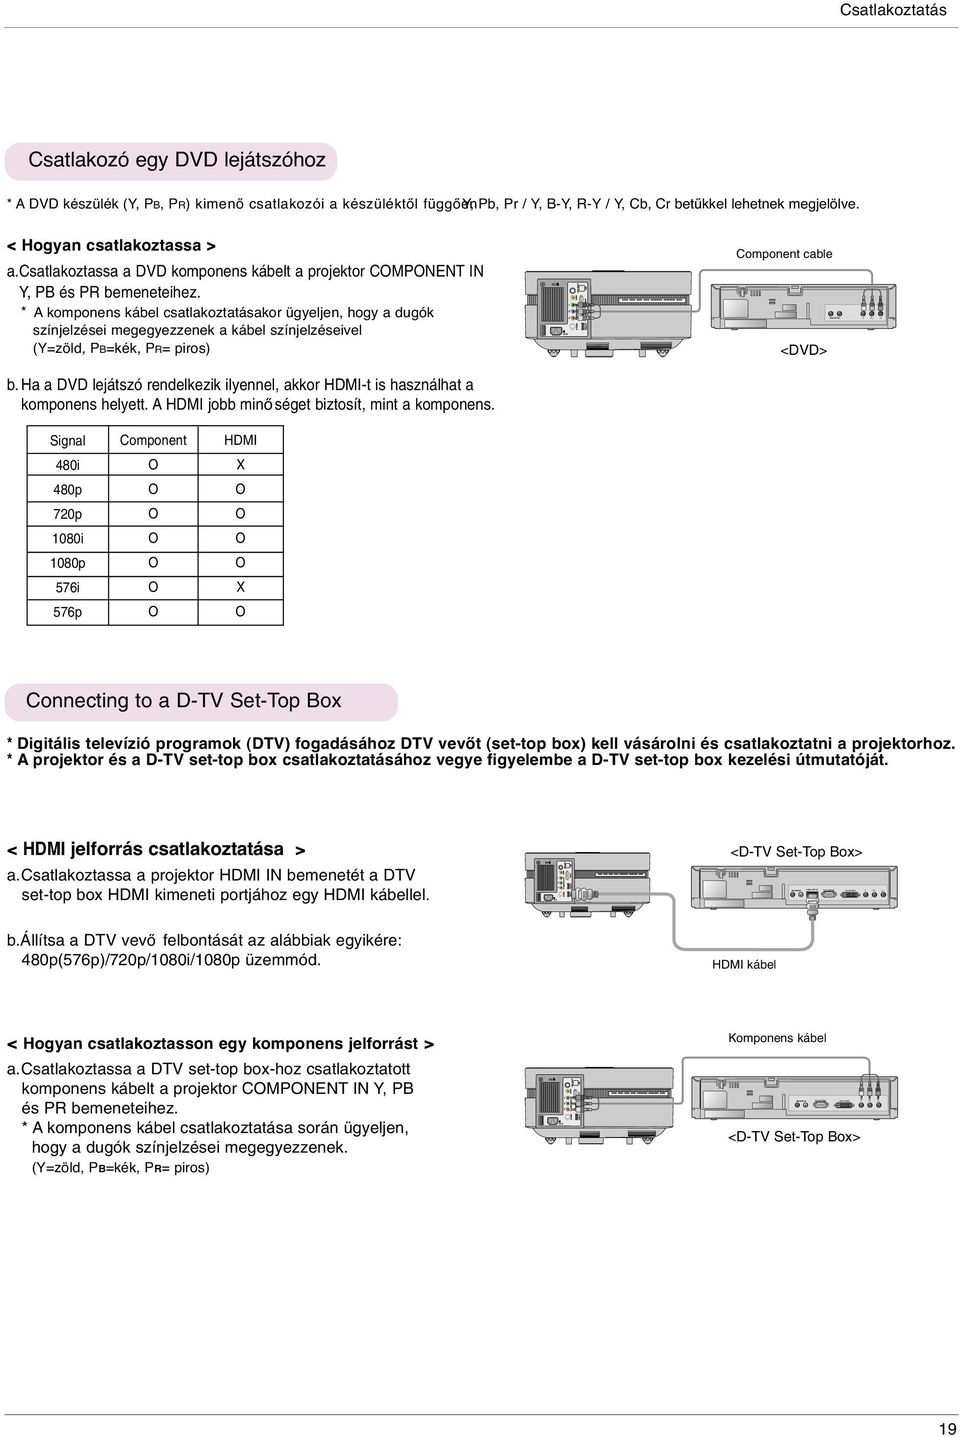 csatlakoztassa a DVD komponens kábelt a projektor CMPNENT IN Y, PB és PR bemeneteihez.